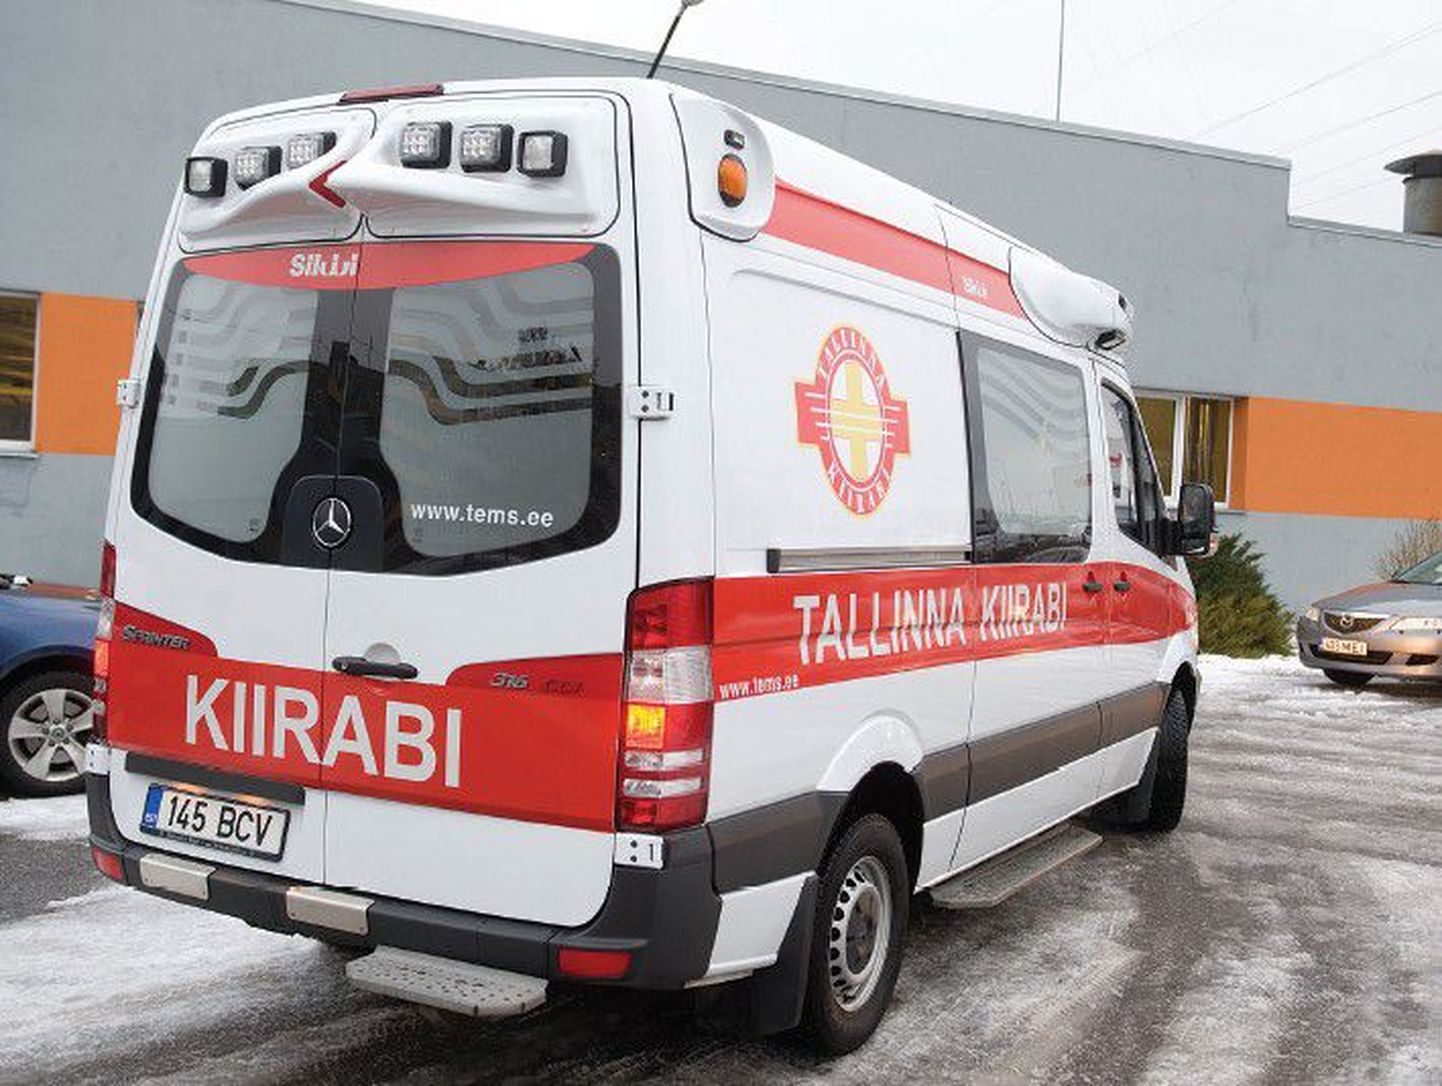 Автомобили Таллиннской скорой помощи уже обзавелись новым логотипом.